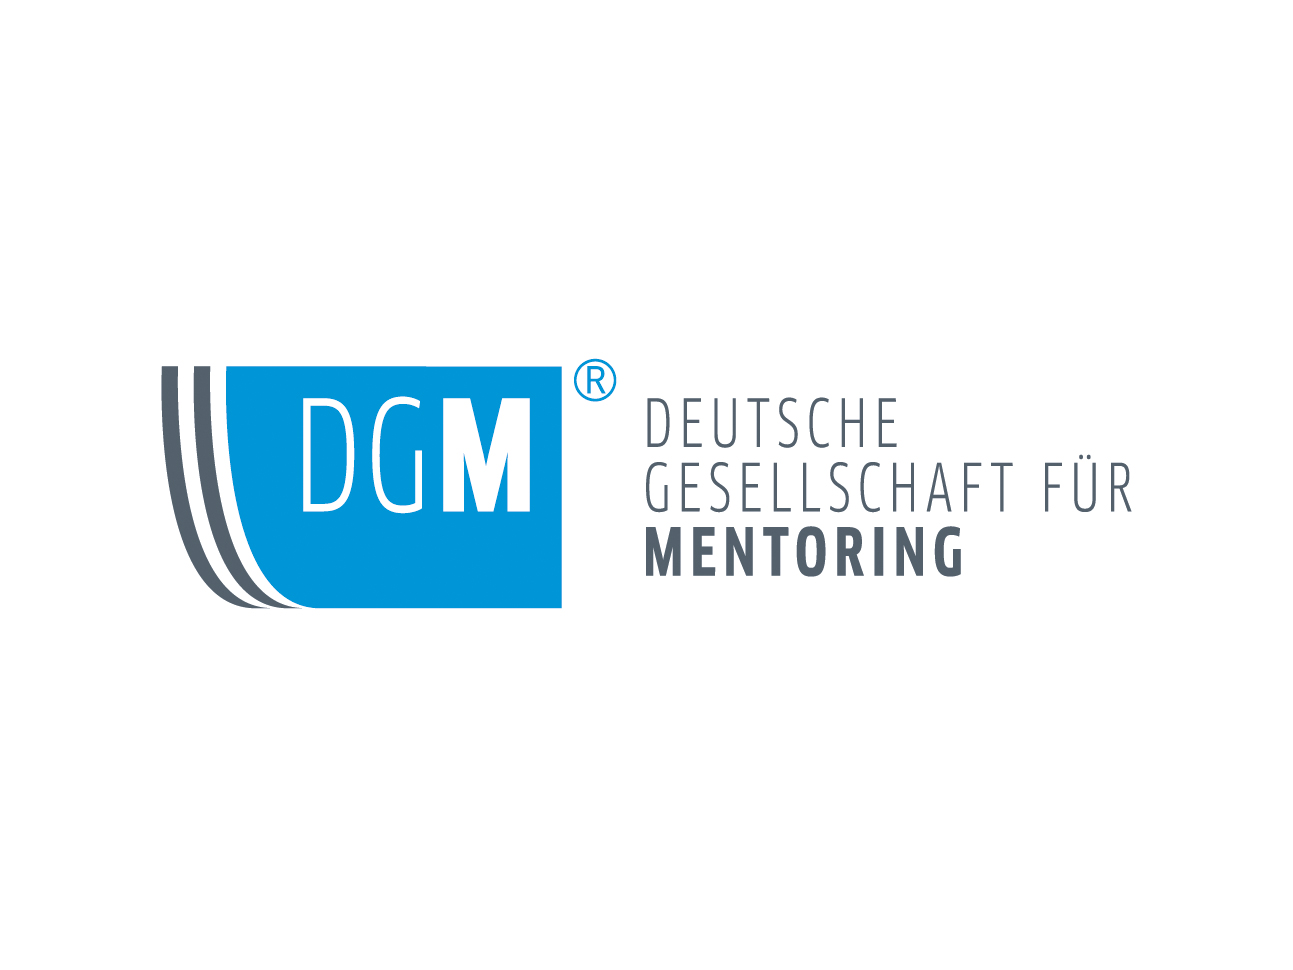 martin_zech_design_corporate_design_deutsche_gesellschaft_fuer_mentoring_logo